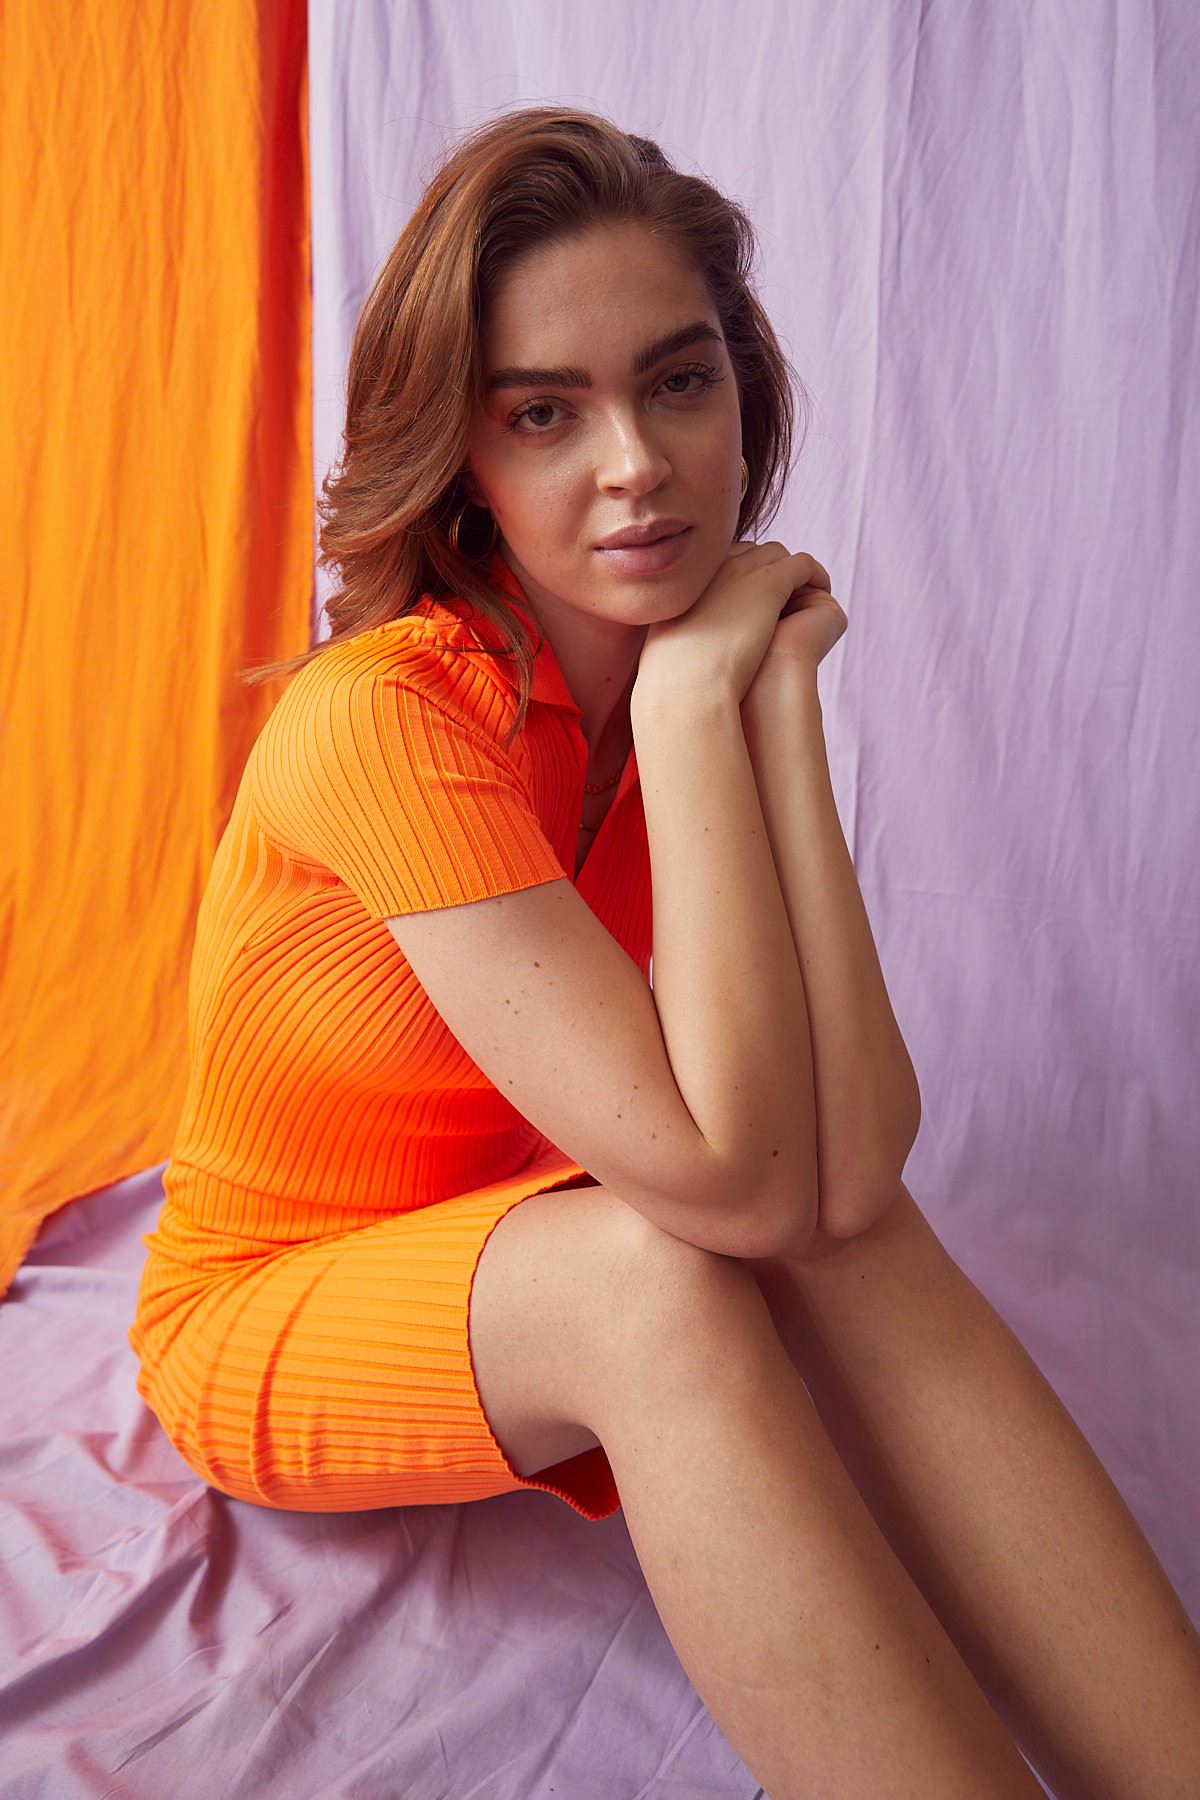 Gömlek Yaka Triko Elbise-Oranj